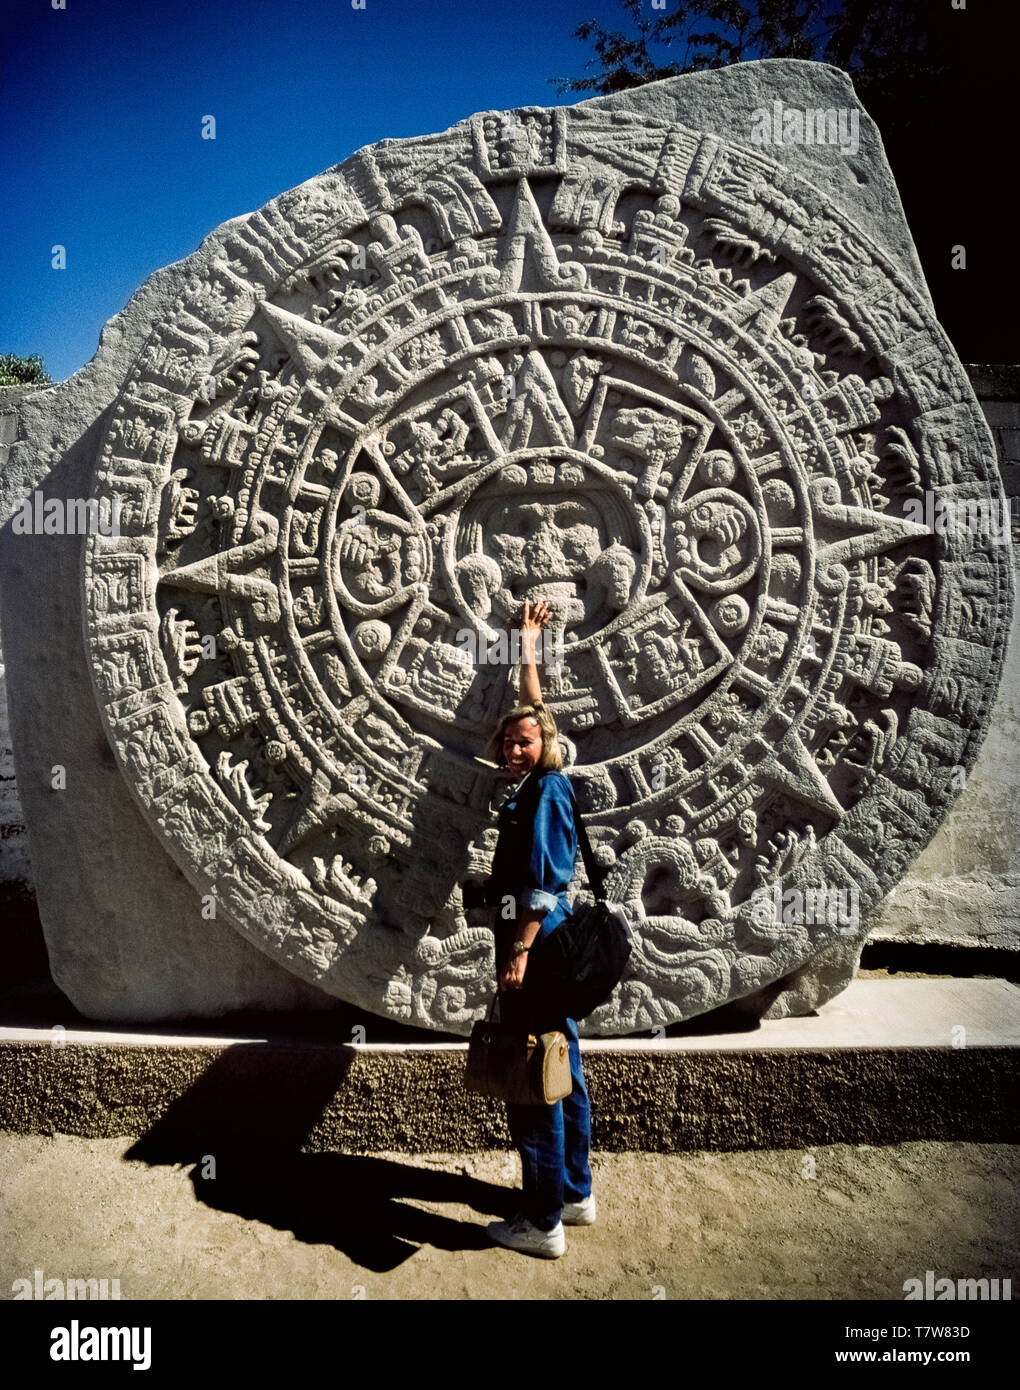 Eine Frau touristische Punkte auf das Gesicht der aztekischen Sonne Gottes, der das Zentrum dieser Replik eines großen Mexikanischen archäologischen Entdeckung eines massiven bekannt Carving wie der aztekische Kalender Stein auf Display in La Paz, der Hauptstadt von Baja California Sur, Mexiko, Nordamerika. Auch als der aztekischen Sonne Stein, den ursprünglichen Basalt-Platte wurde in Mexiko City im Jahr 1790 gefunden. Hieroglyphen auf der runden Monolith beziehen sich die Mythologie der Re - Schaffung des Aztecan Welt im 16. Jahrhundert. Stockfoto